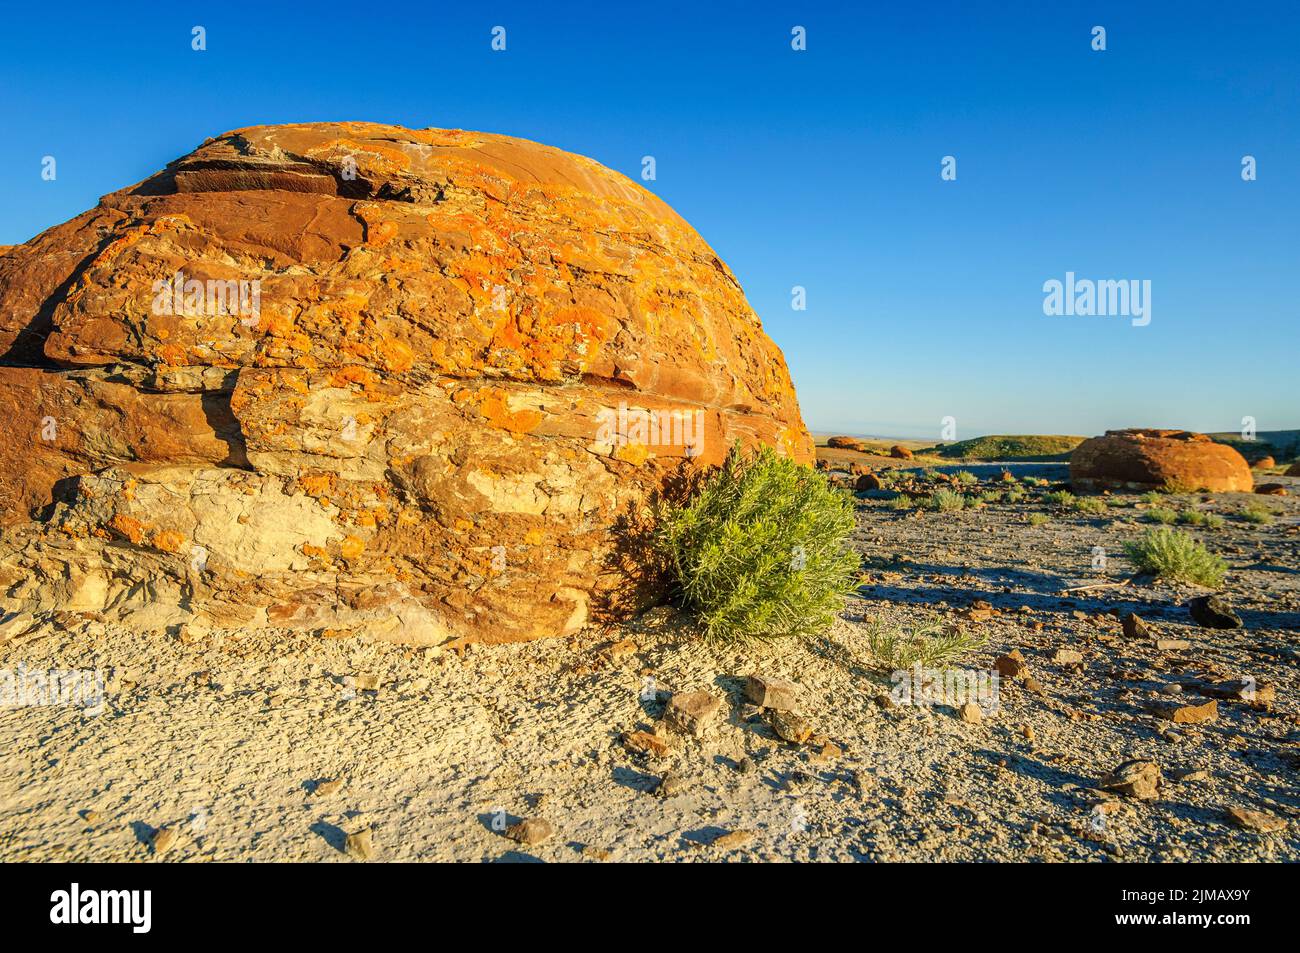 Eine kugelförmige Sandsteinbetonierung, die rot mit Eisenoxid gefärbt ist, im Red Rock Coulee Natural Area im Süden Albertas Stockfoto